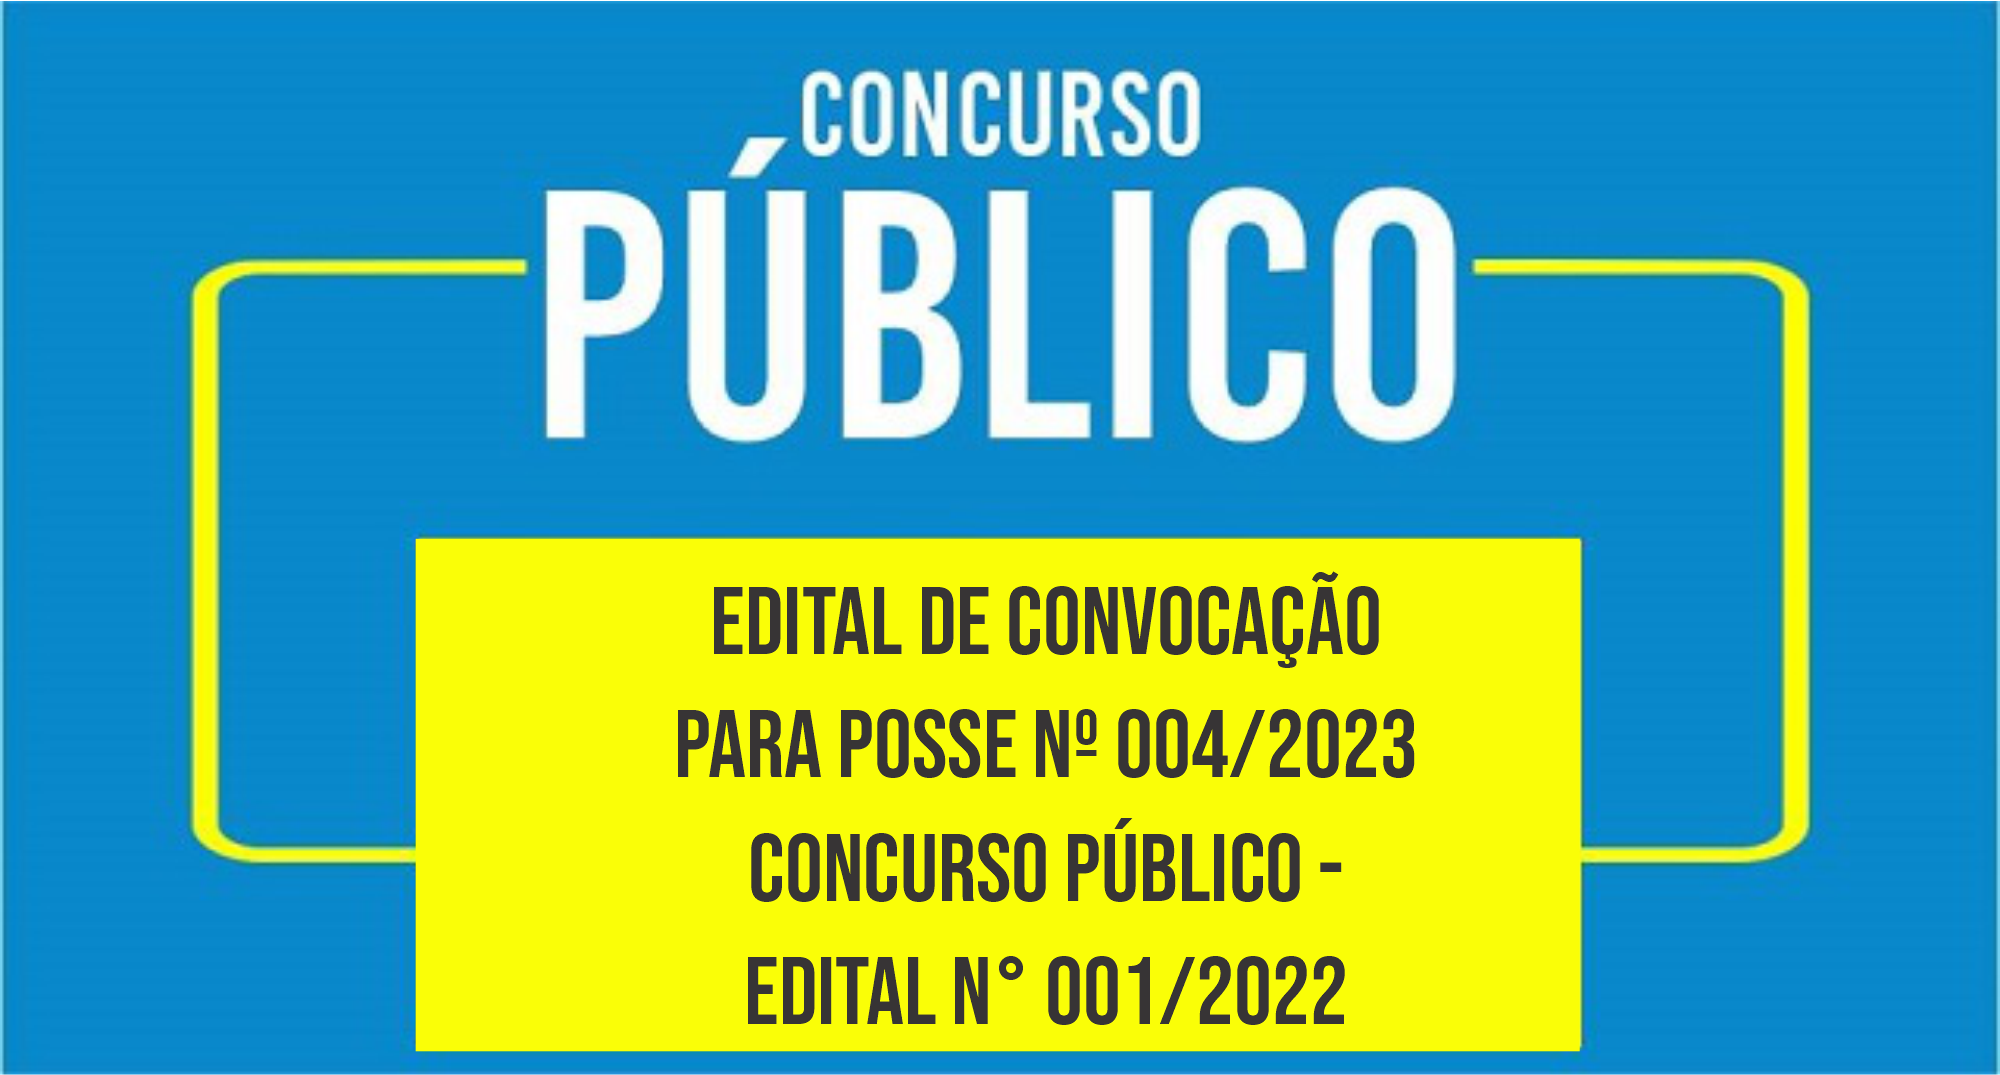 EDITAL DE CONVOCAÇÃO PARA POSSE Nº 004/2023 CONCURSO PÚBLICO - EDITAL N° 001/2022